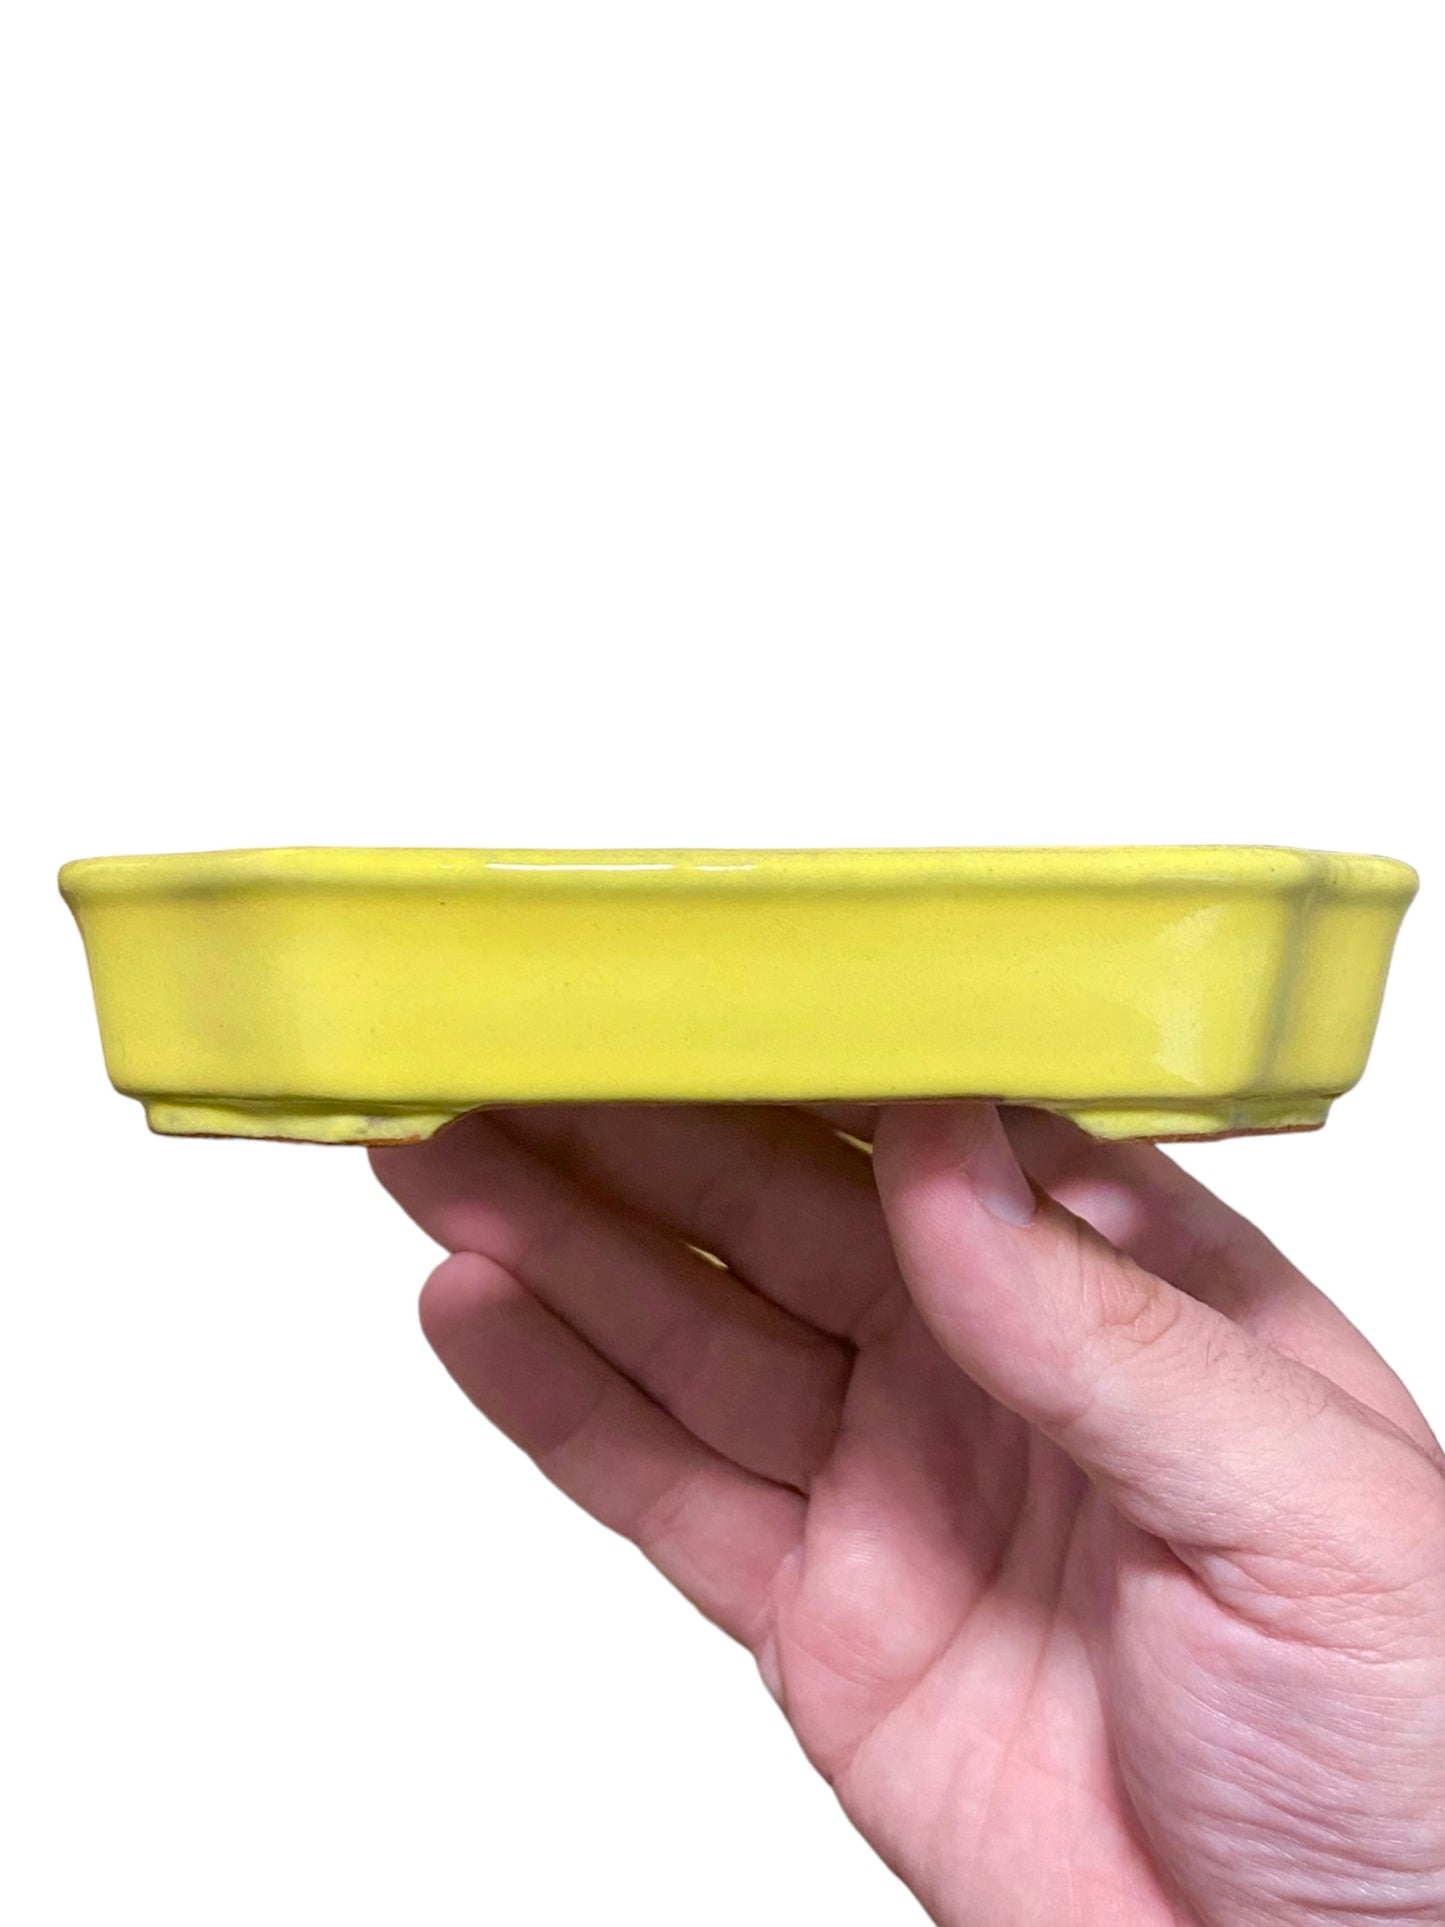 Ikko - Yellow Glazed Mokko Style Bonsai or Accent Pot